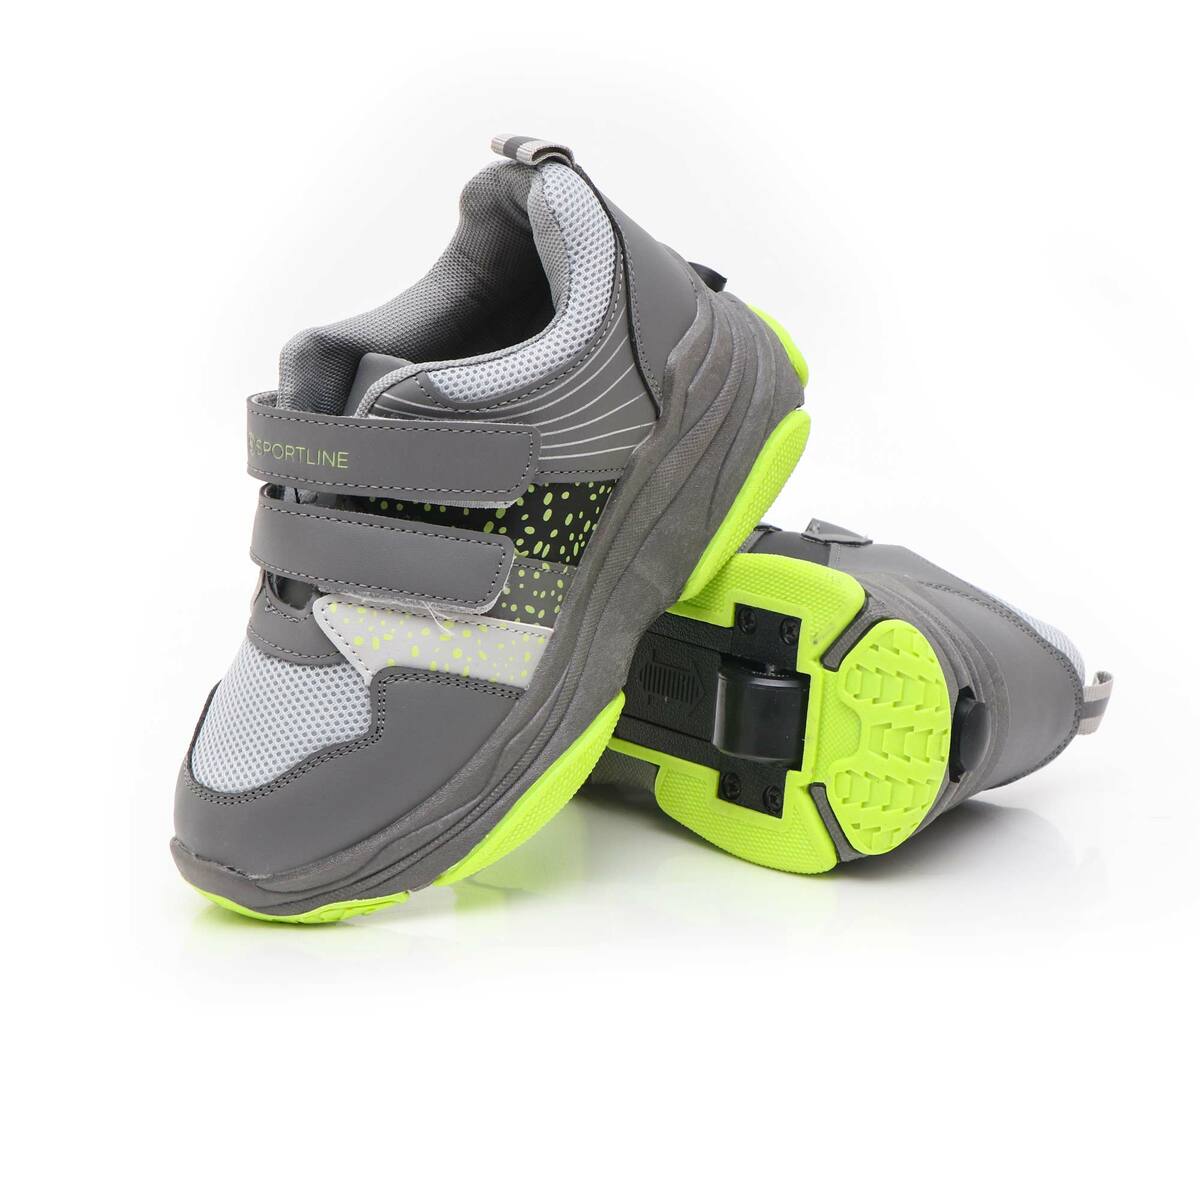 Buy Sportline Boys Shoes with Wheel RY2001 29 Online - Lulu Hypermarket ...